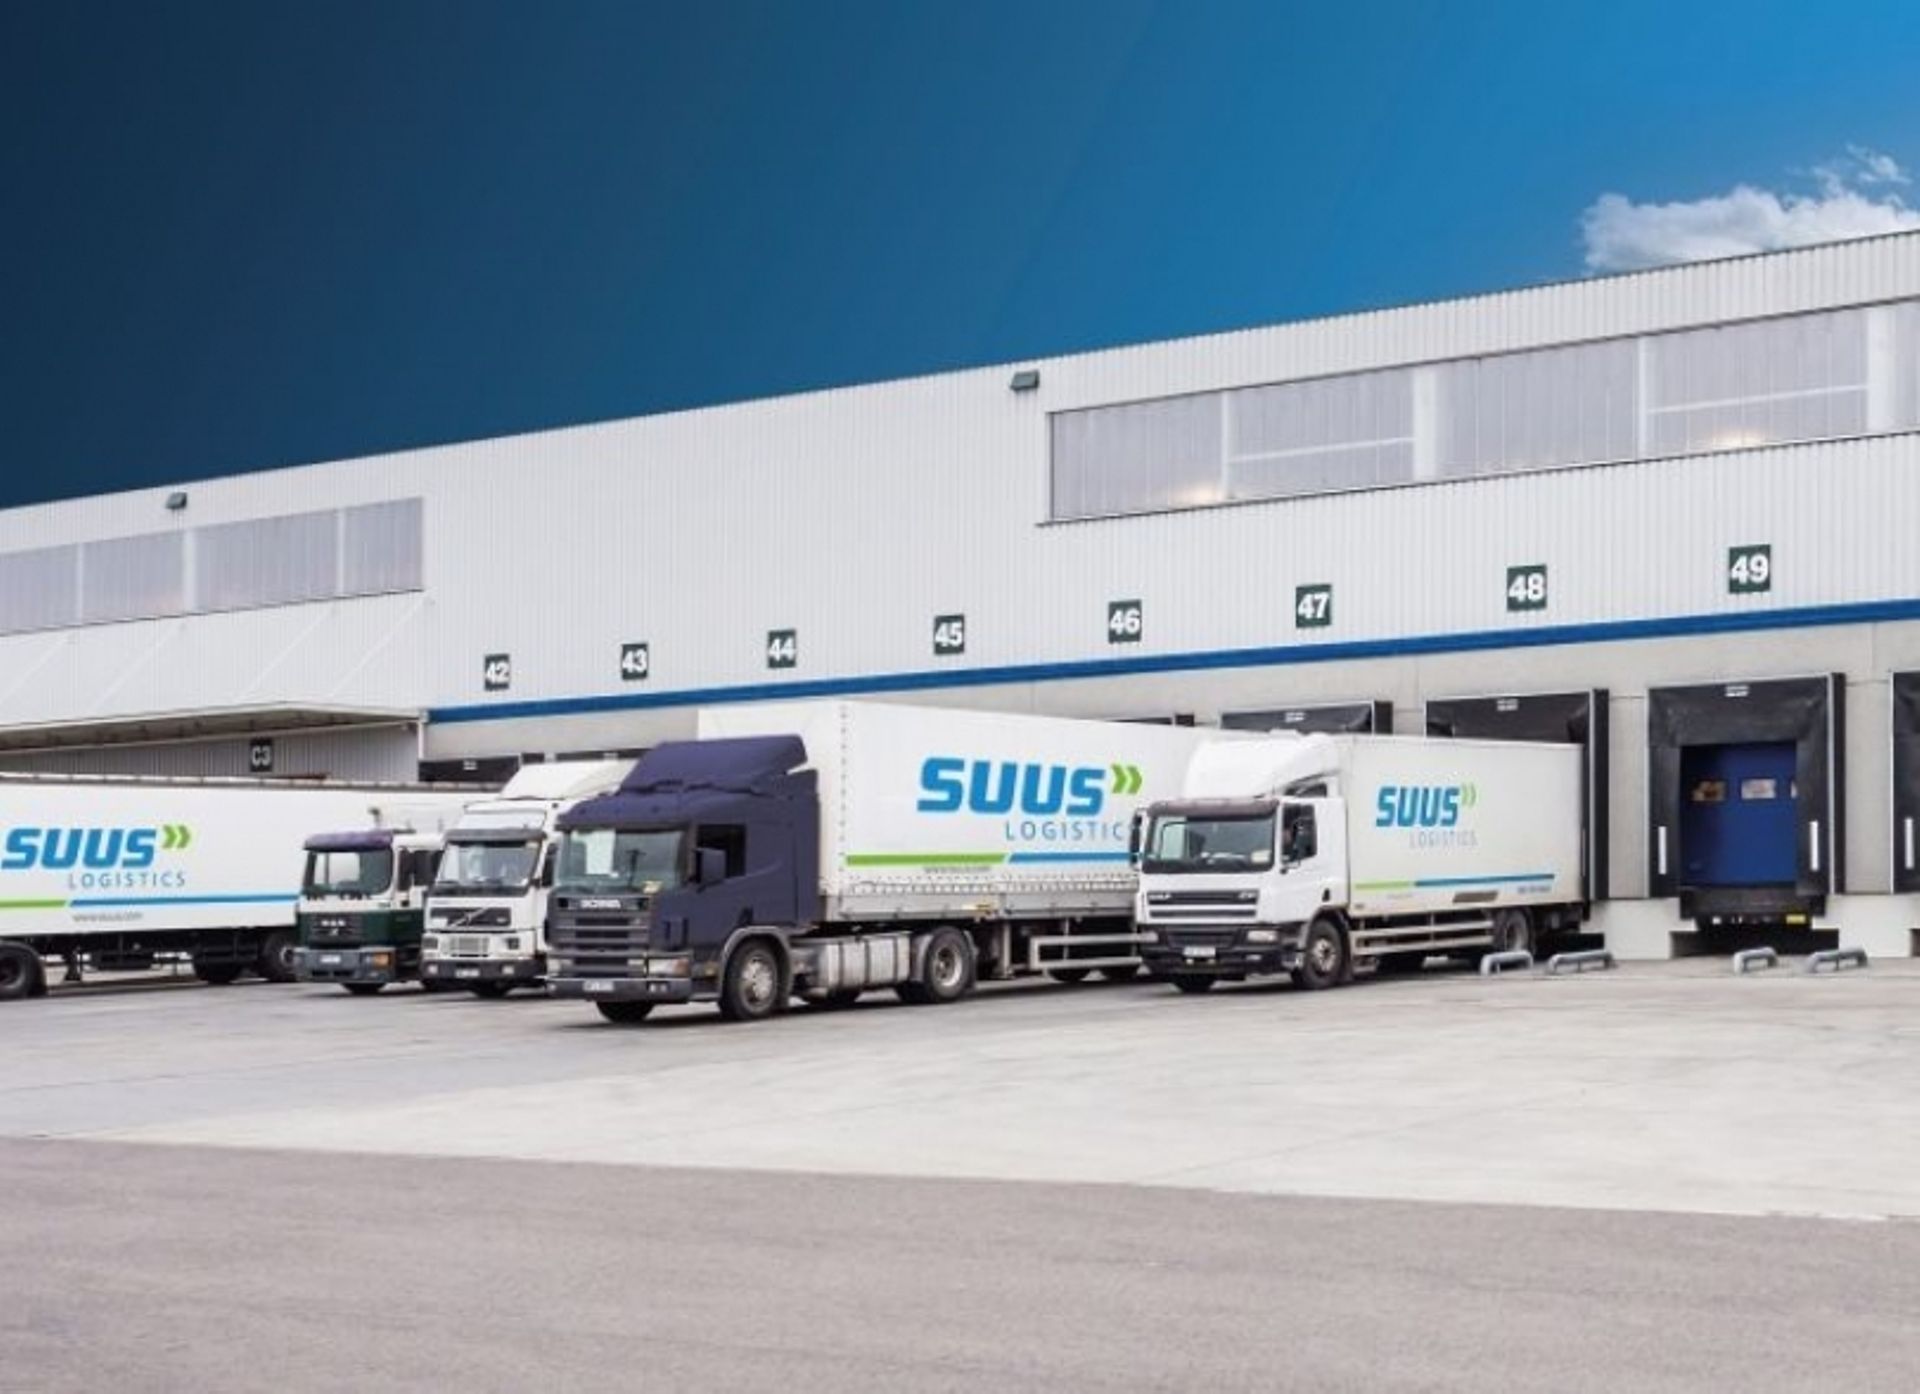  Rohlig Suus Logistics otwiera magazyn przeładunkowy o powierzchni 15 tys. mkw. we Wrocławiu